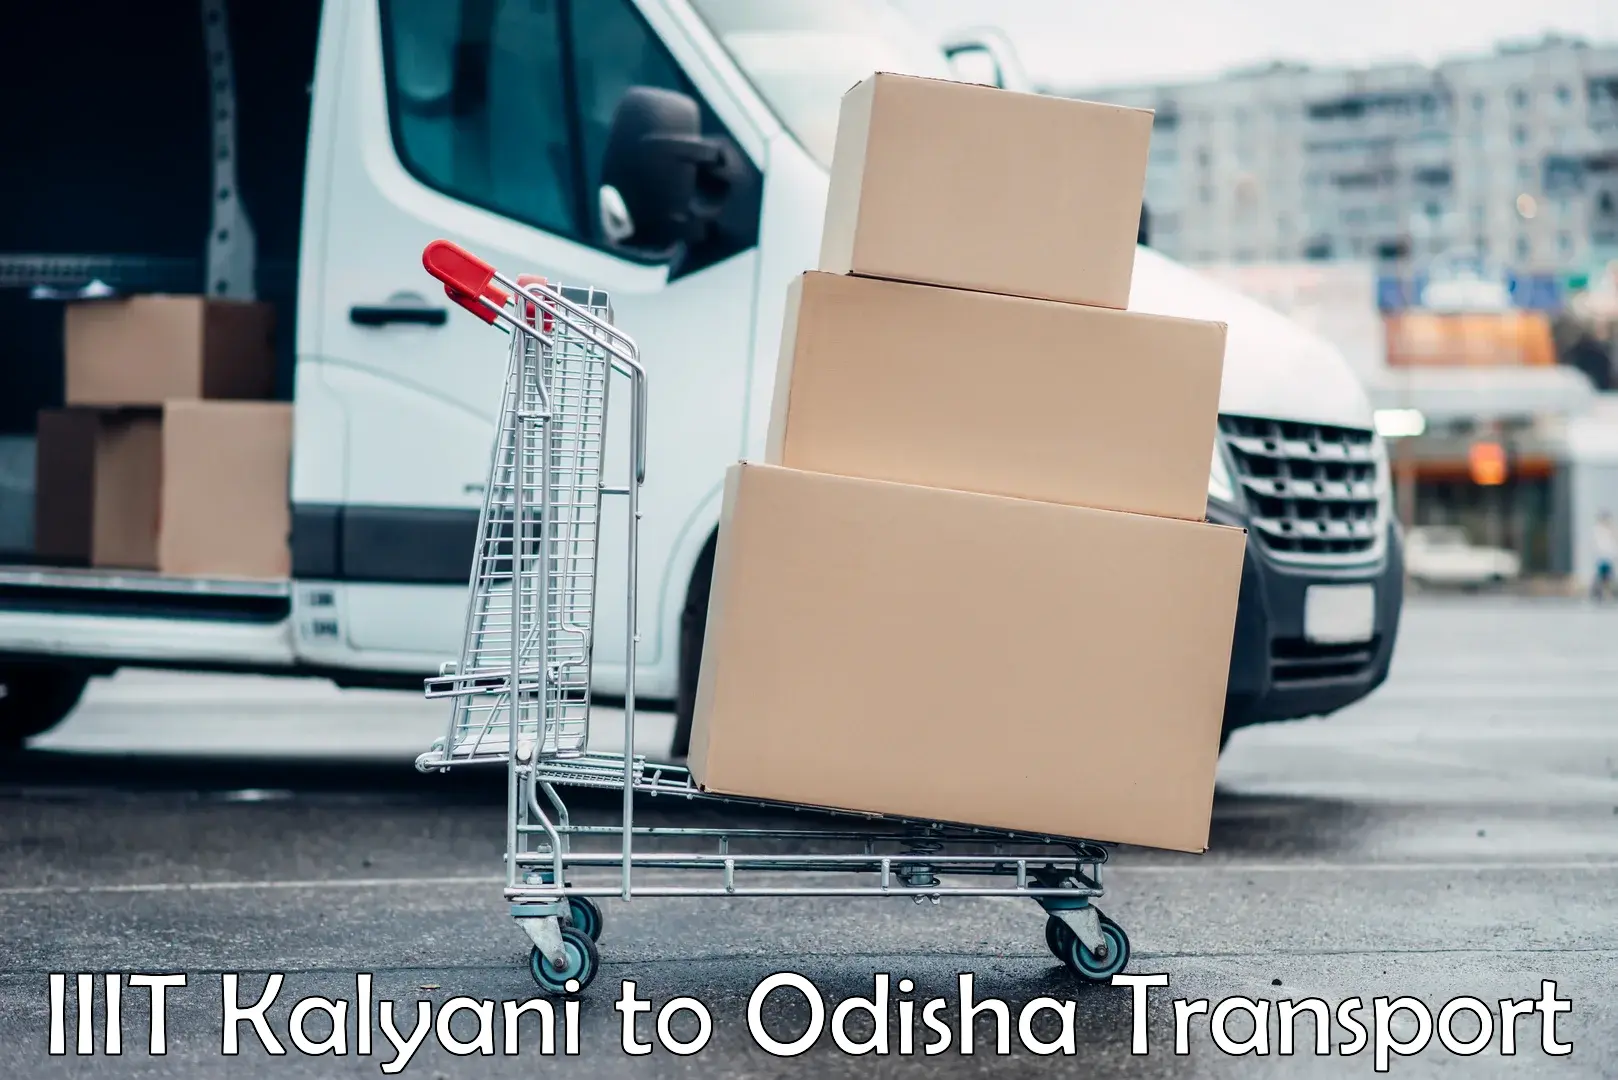 Nearby transport service IIIT Kalyani to Kotapad